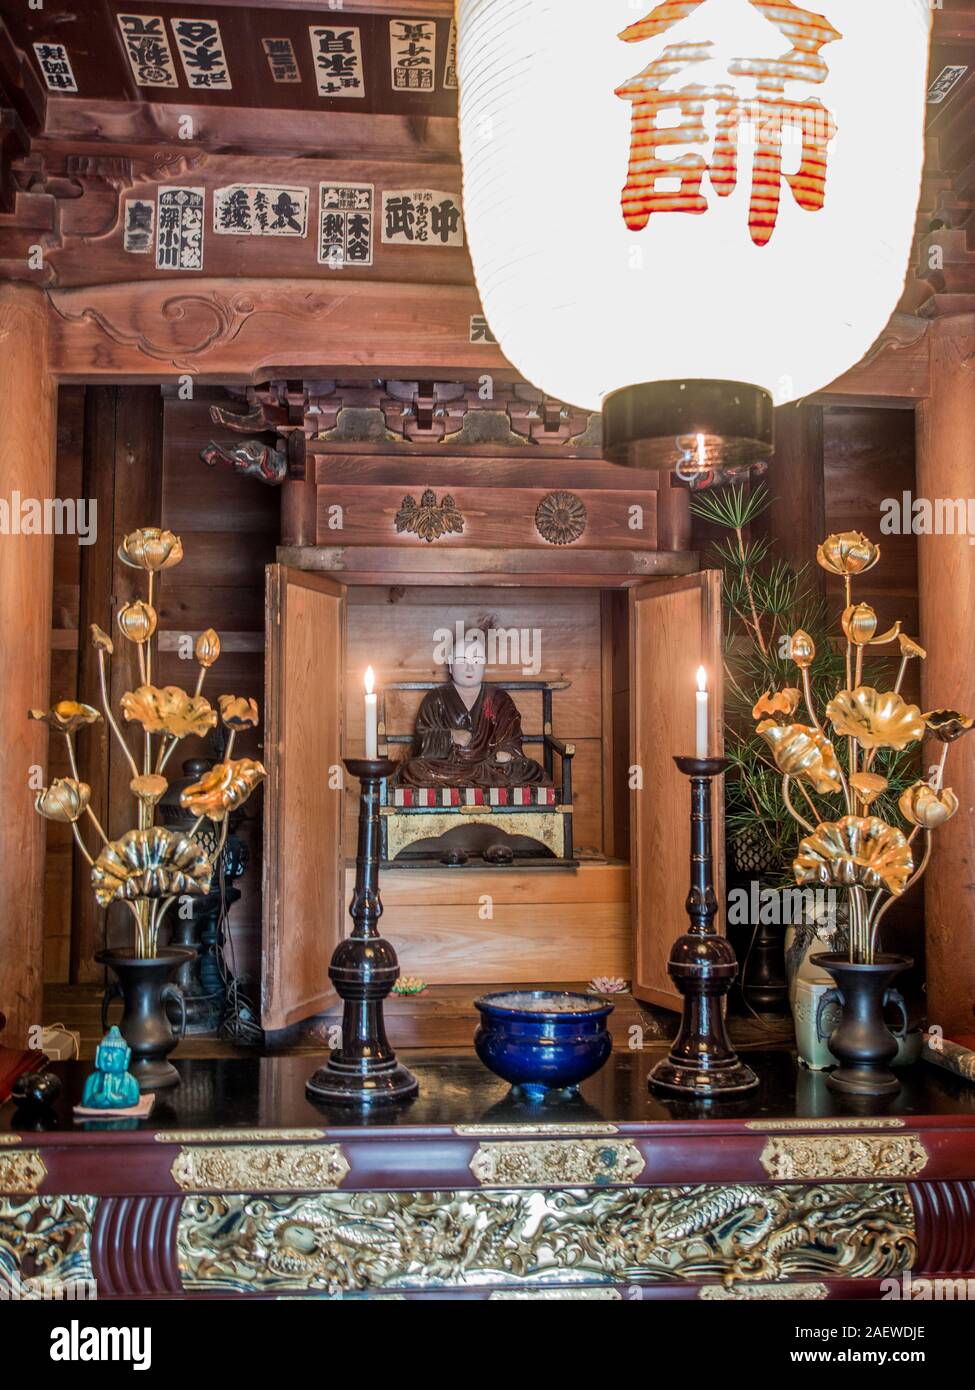 Altare con Kobo Daishi Kukai statua, candele accese, chochin lanterna, tempio Meisekiji 43, 88 Tempio pellegrinaggio di Shikoku, Ehime Shikoku Giappone Foto Stock